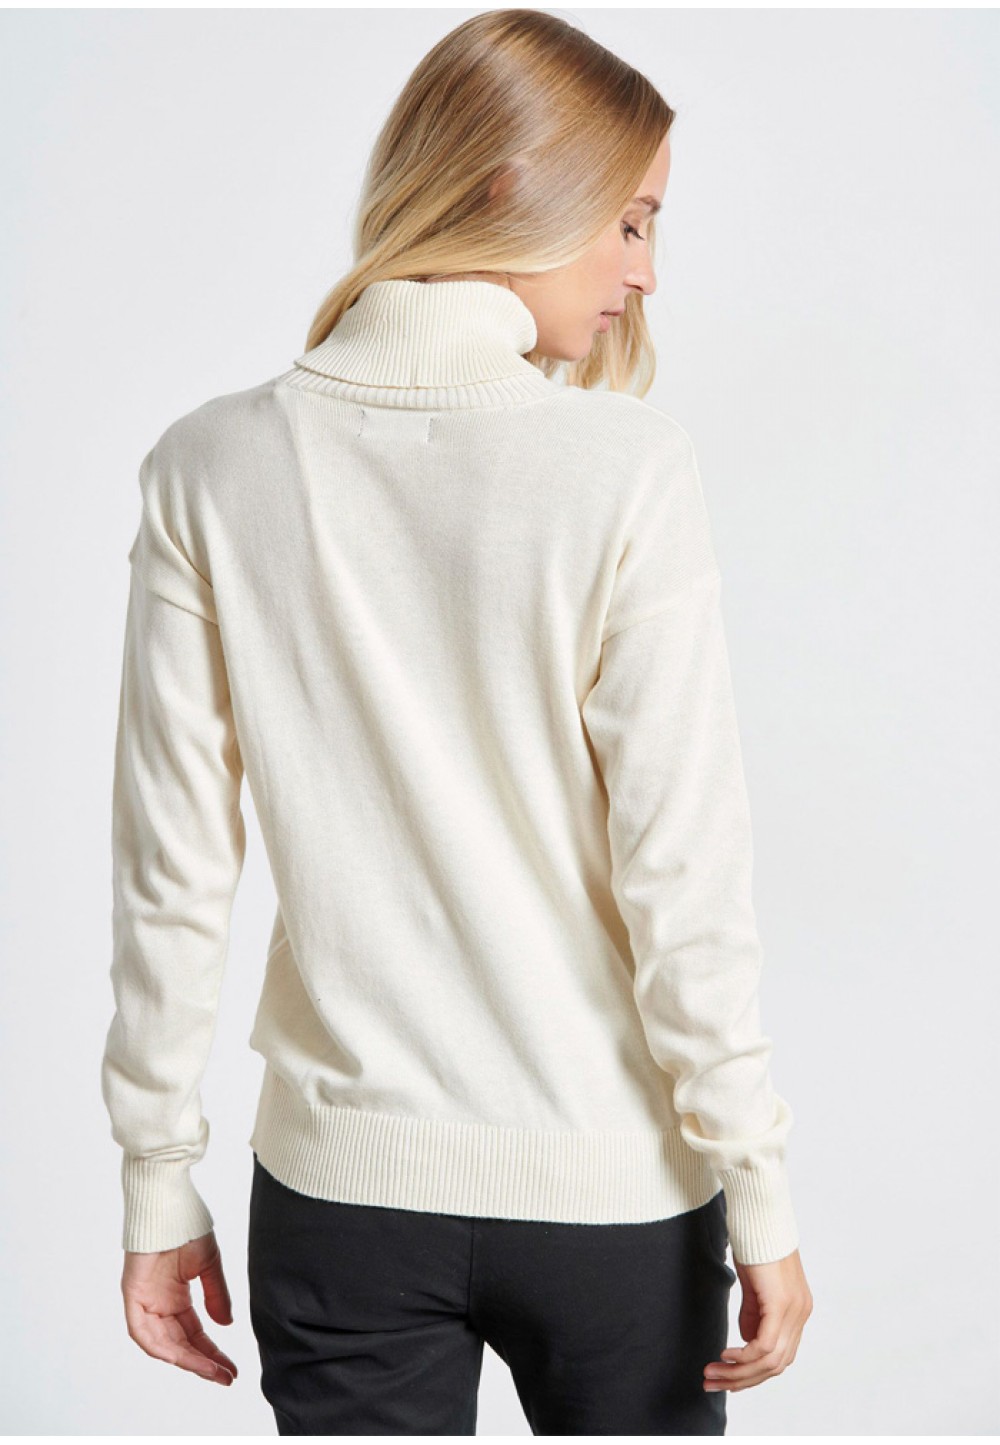 Жіночий білий пуловер